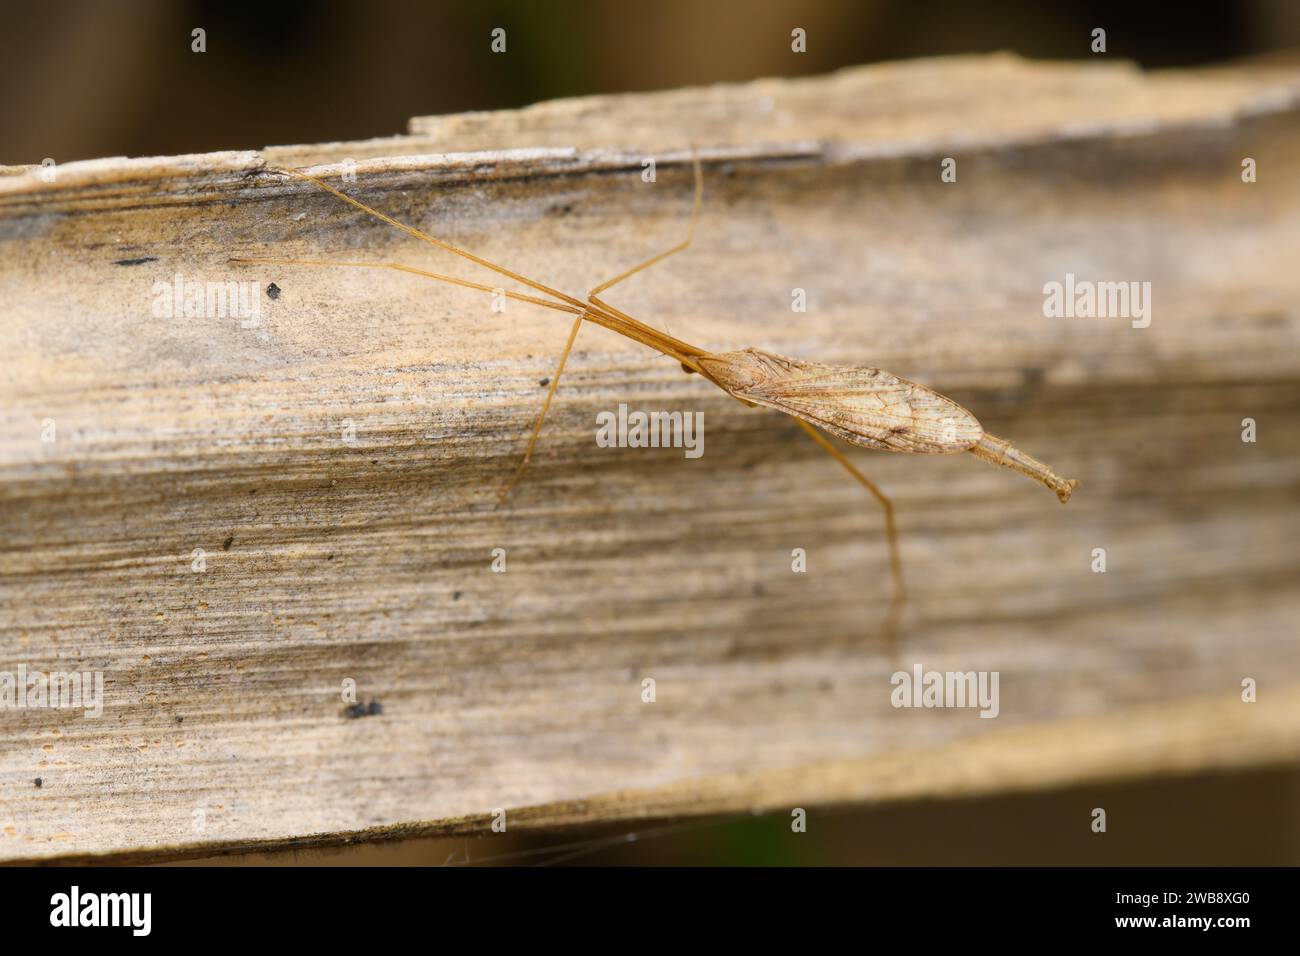 Die zarte Ploiaria domestica, eine fadenbeinige Wanze, klammert sich an einer Holzoberfläche und veranschaulicht die Vielfalt von Sataras Insektenleben. Stockfoto